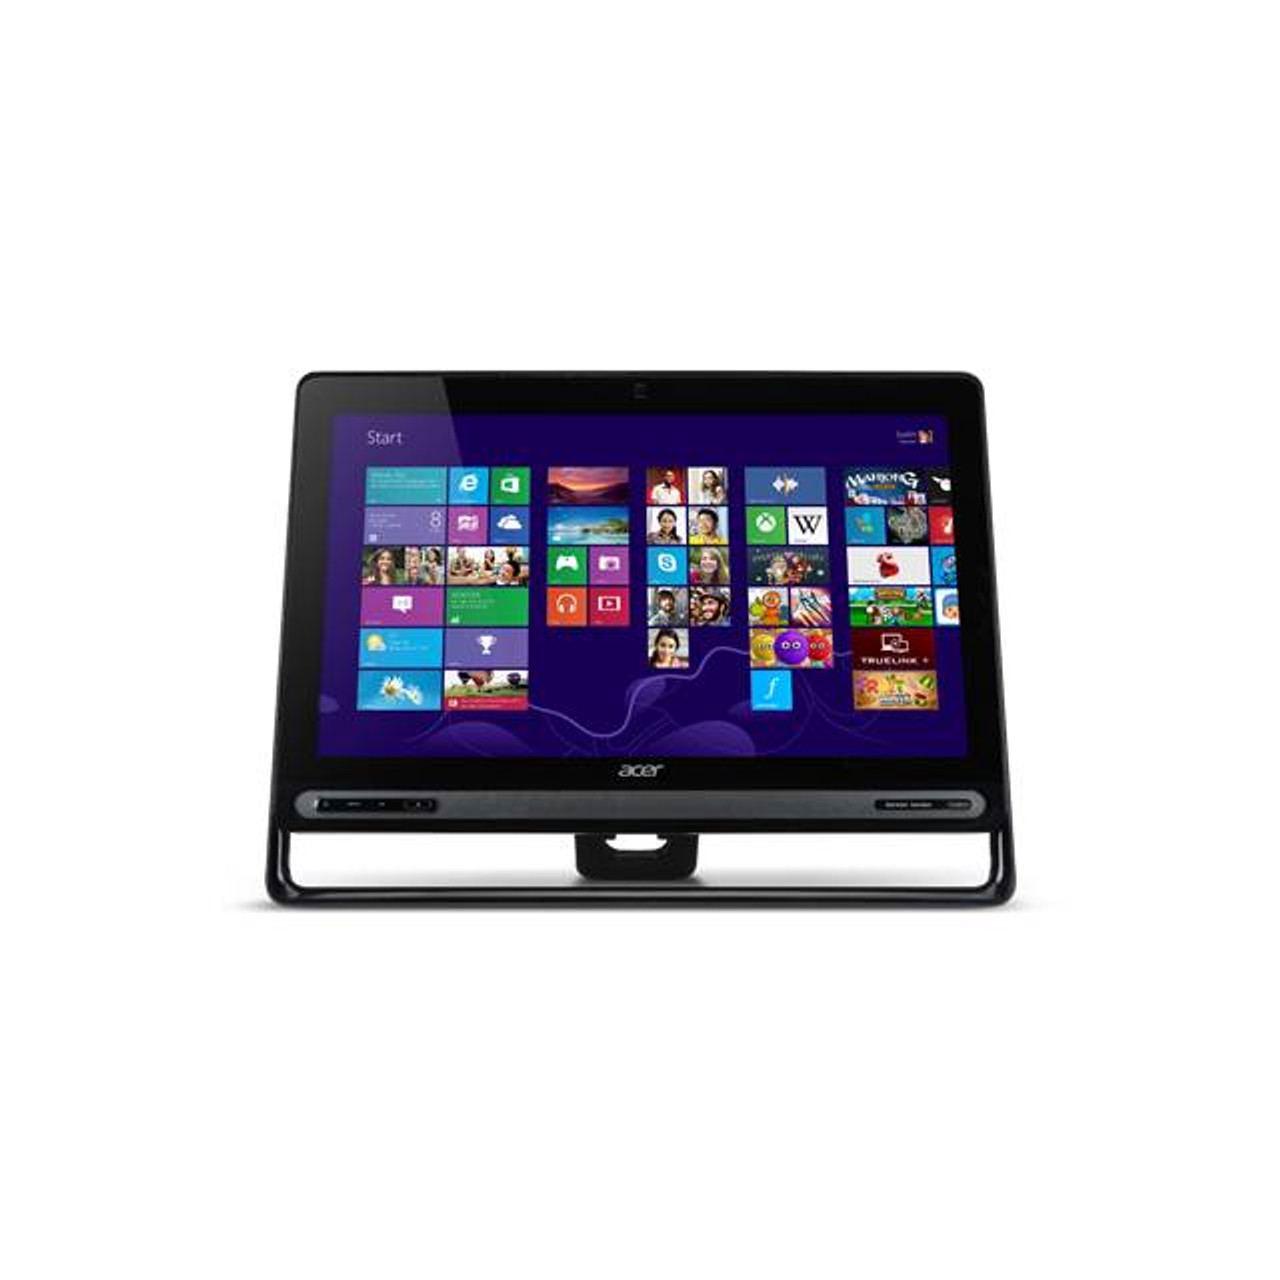 Acer Aspire AZ3-605-UR22 23 inch Touchscreen Intel Core i3-3220U 1.9GHz/ 4GB DDR3/ 1TB HDD/ DVD±RW/ Windows 8 All-in-One PC (Black)